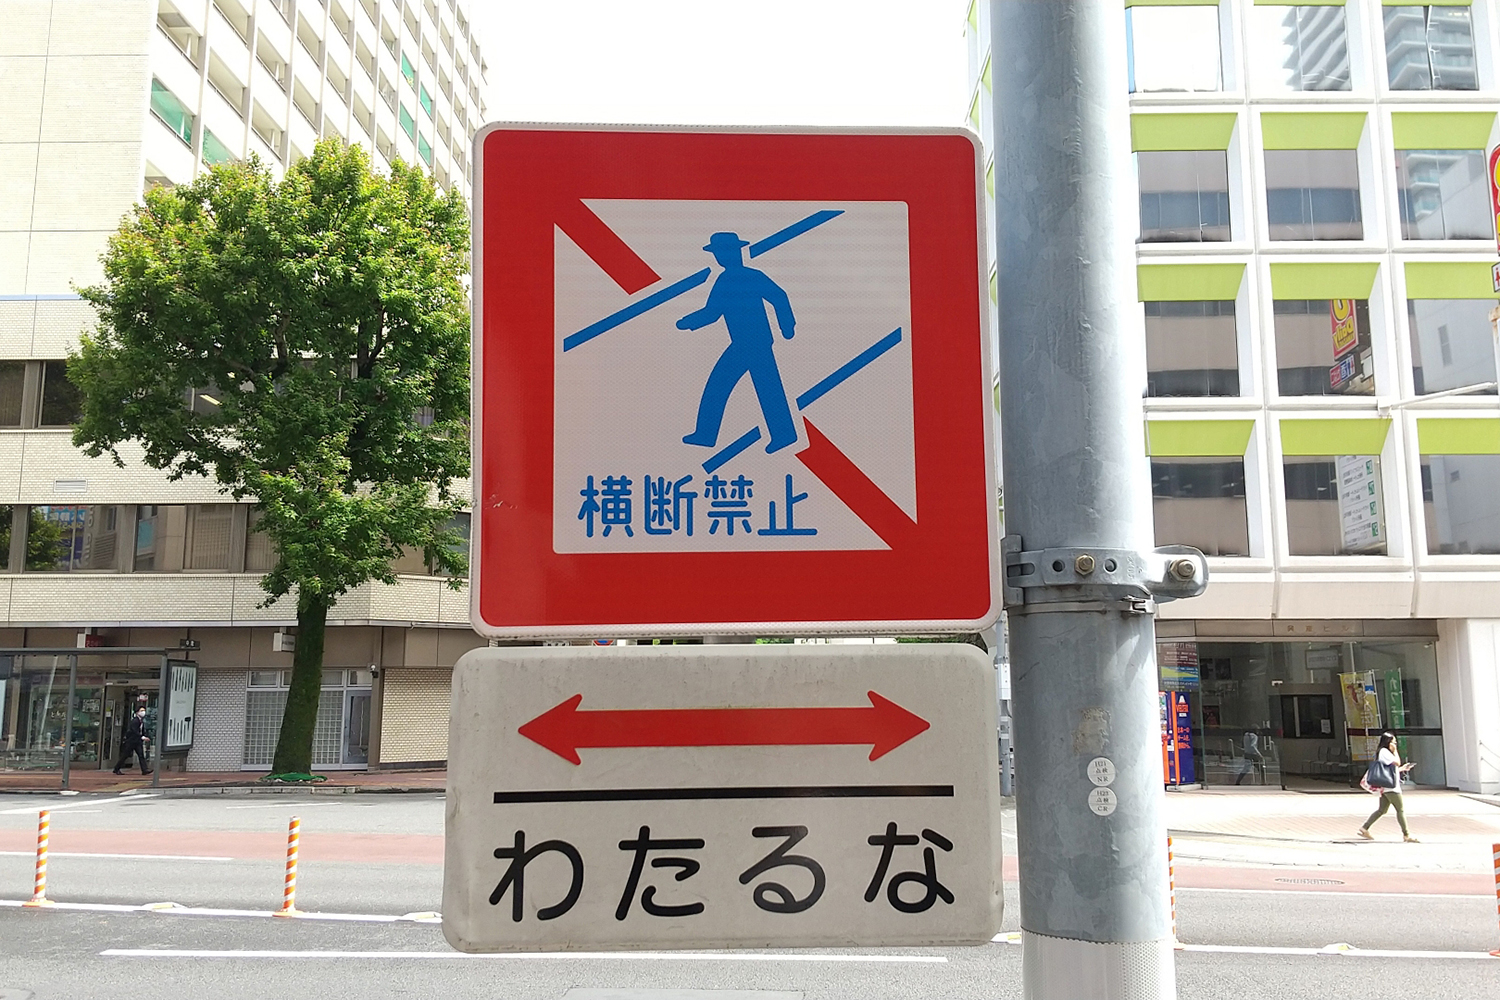 最近「横断禁止」に代わって「わたるな」と書かれた標識が増えている理由 〜 画像2